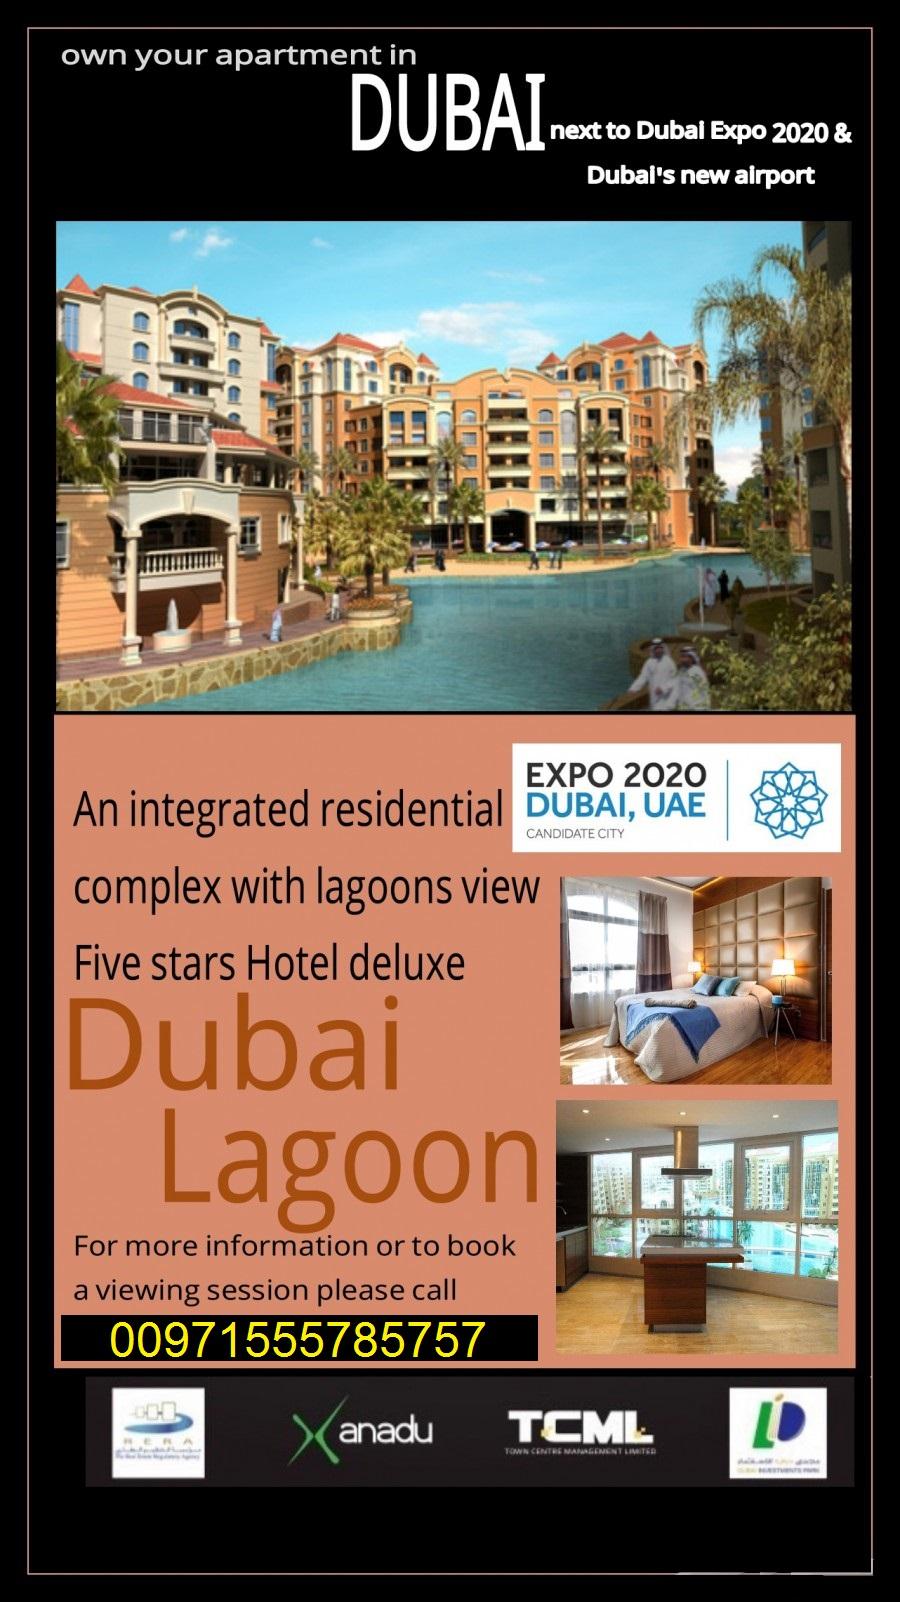 مشروع دبي لاجون في مجمع دبي للاستثمار من شركة شون العقارية Dubai Lagoon